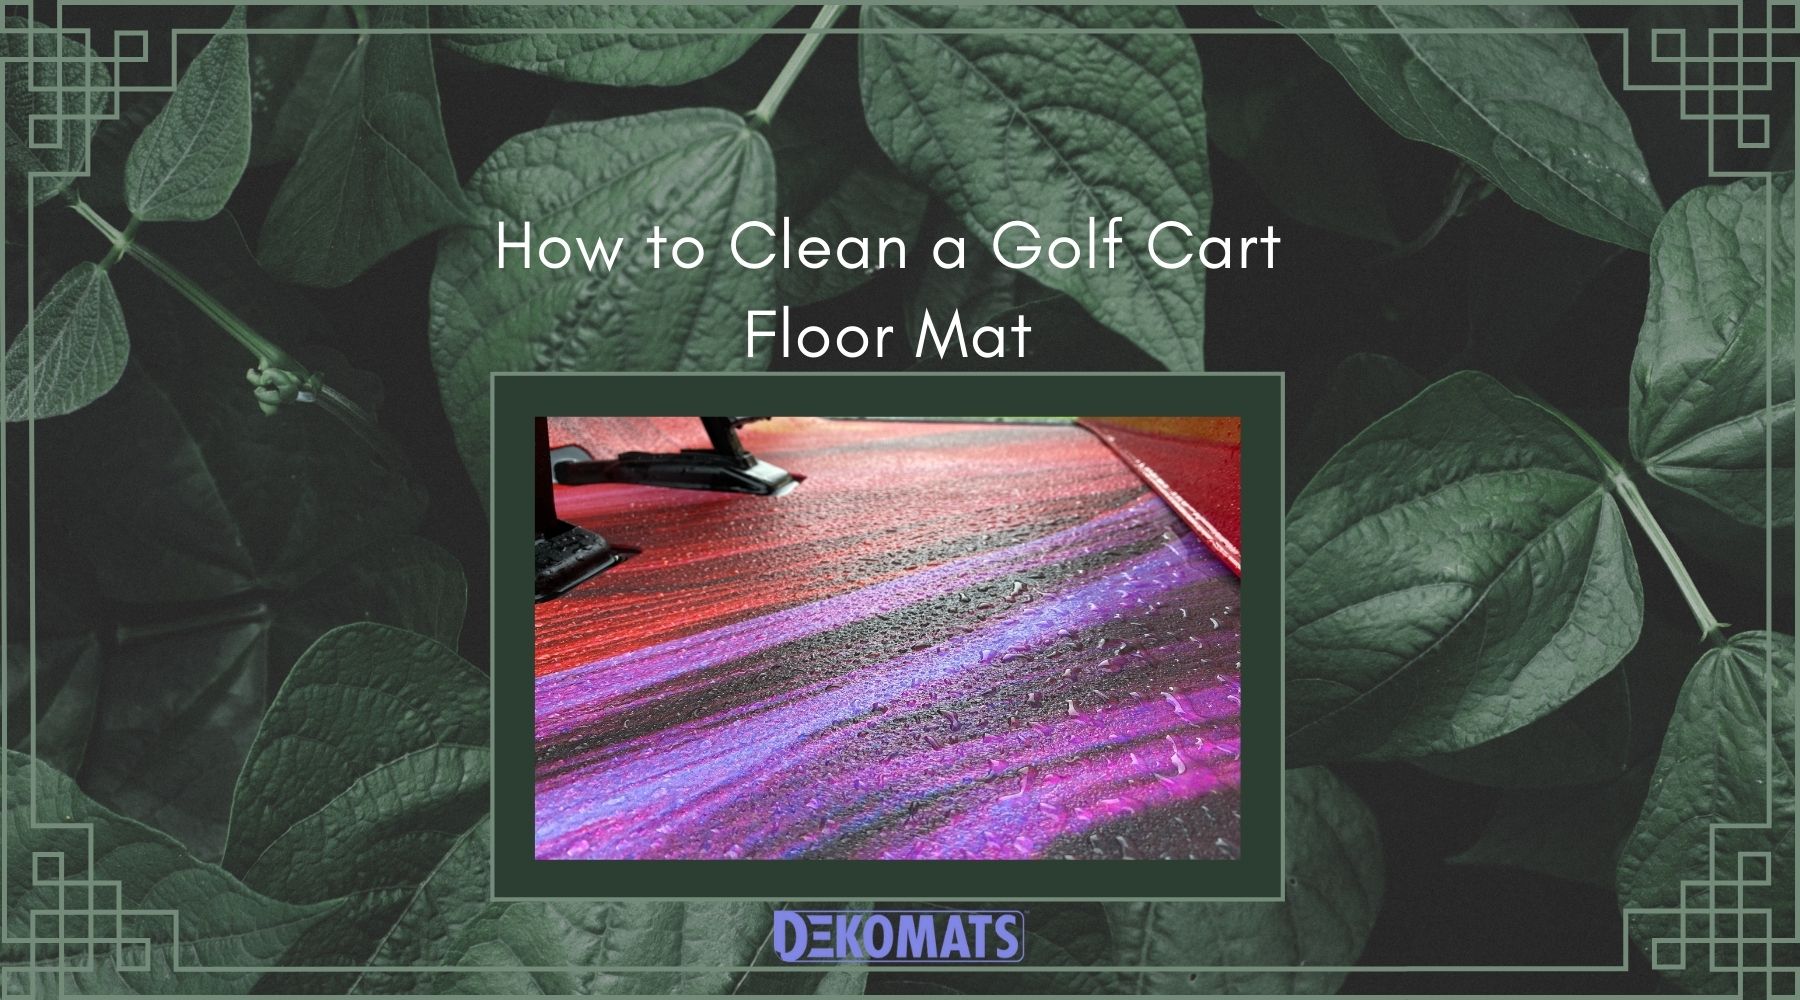 How to clean a golf cart floor mat.